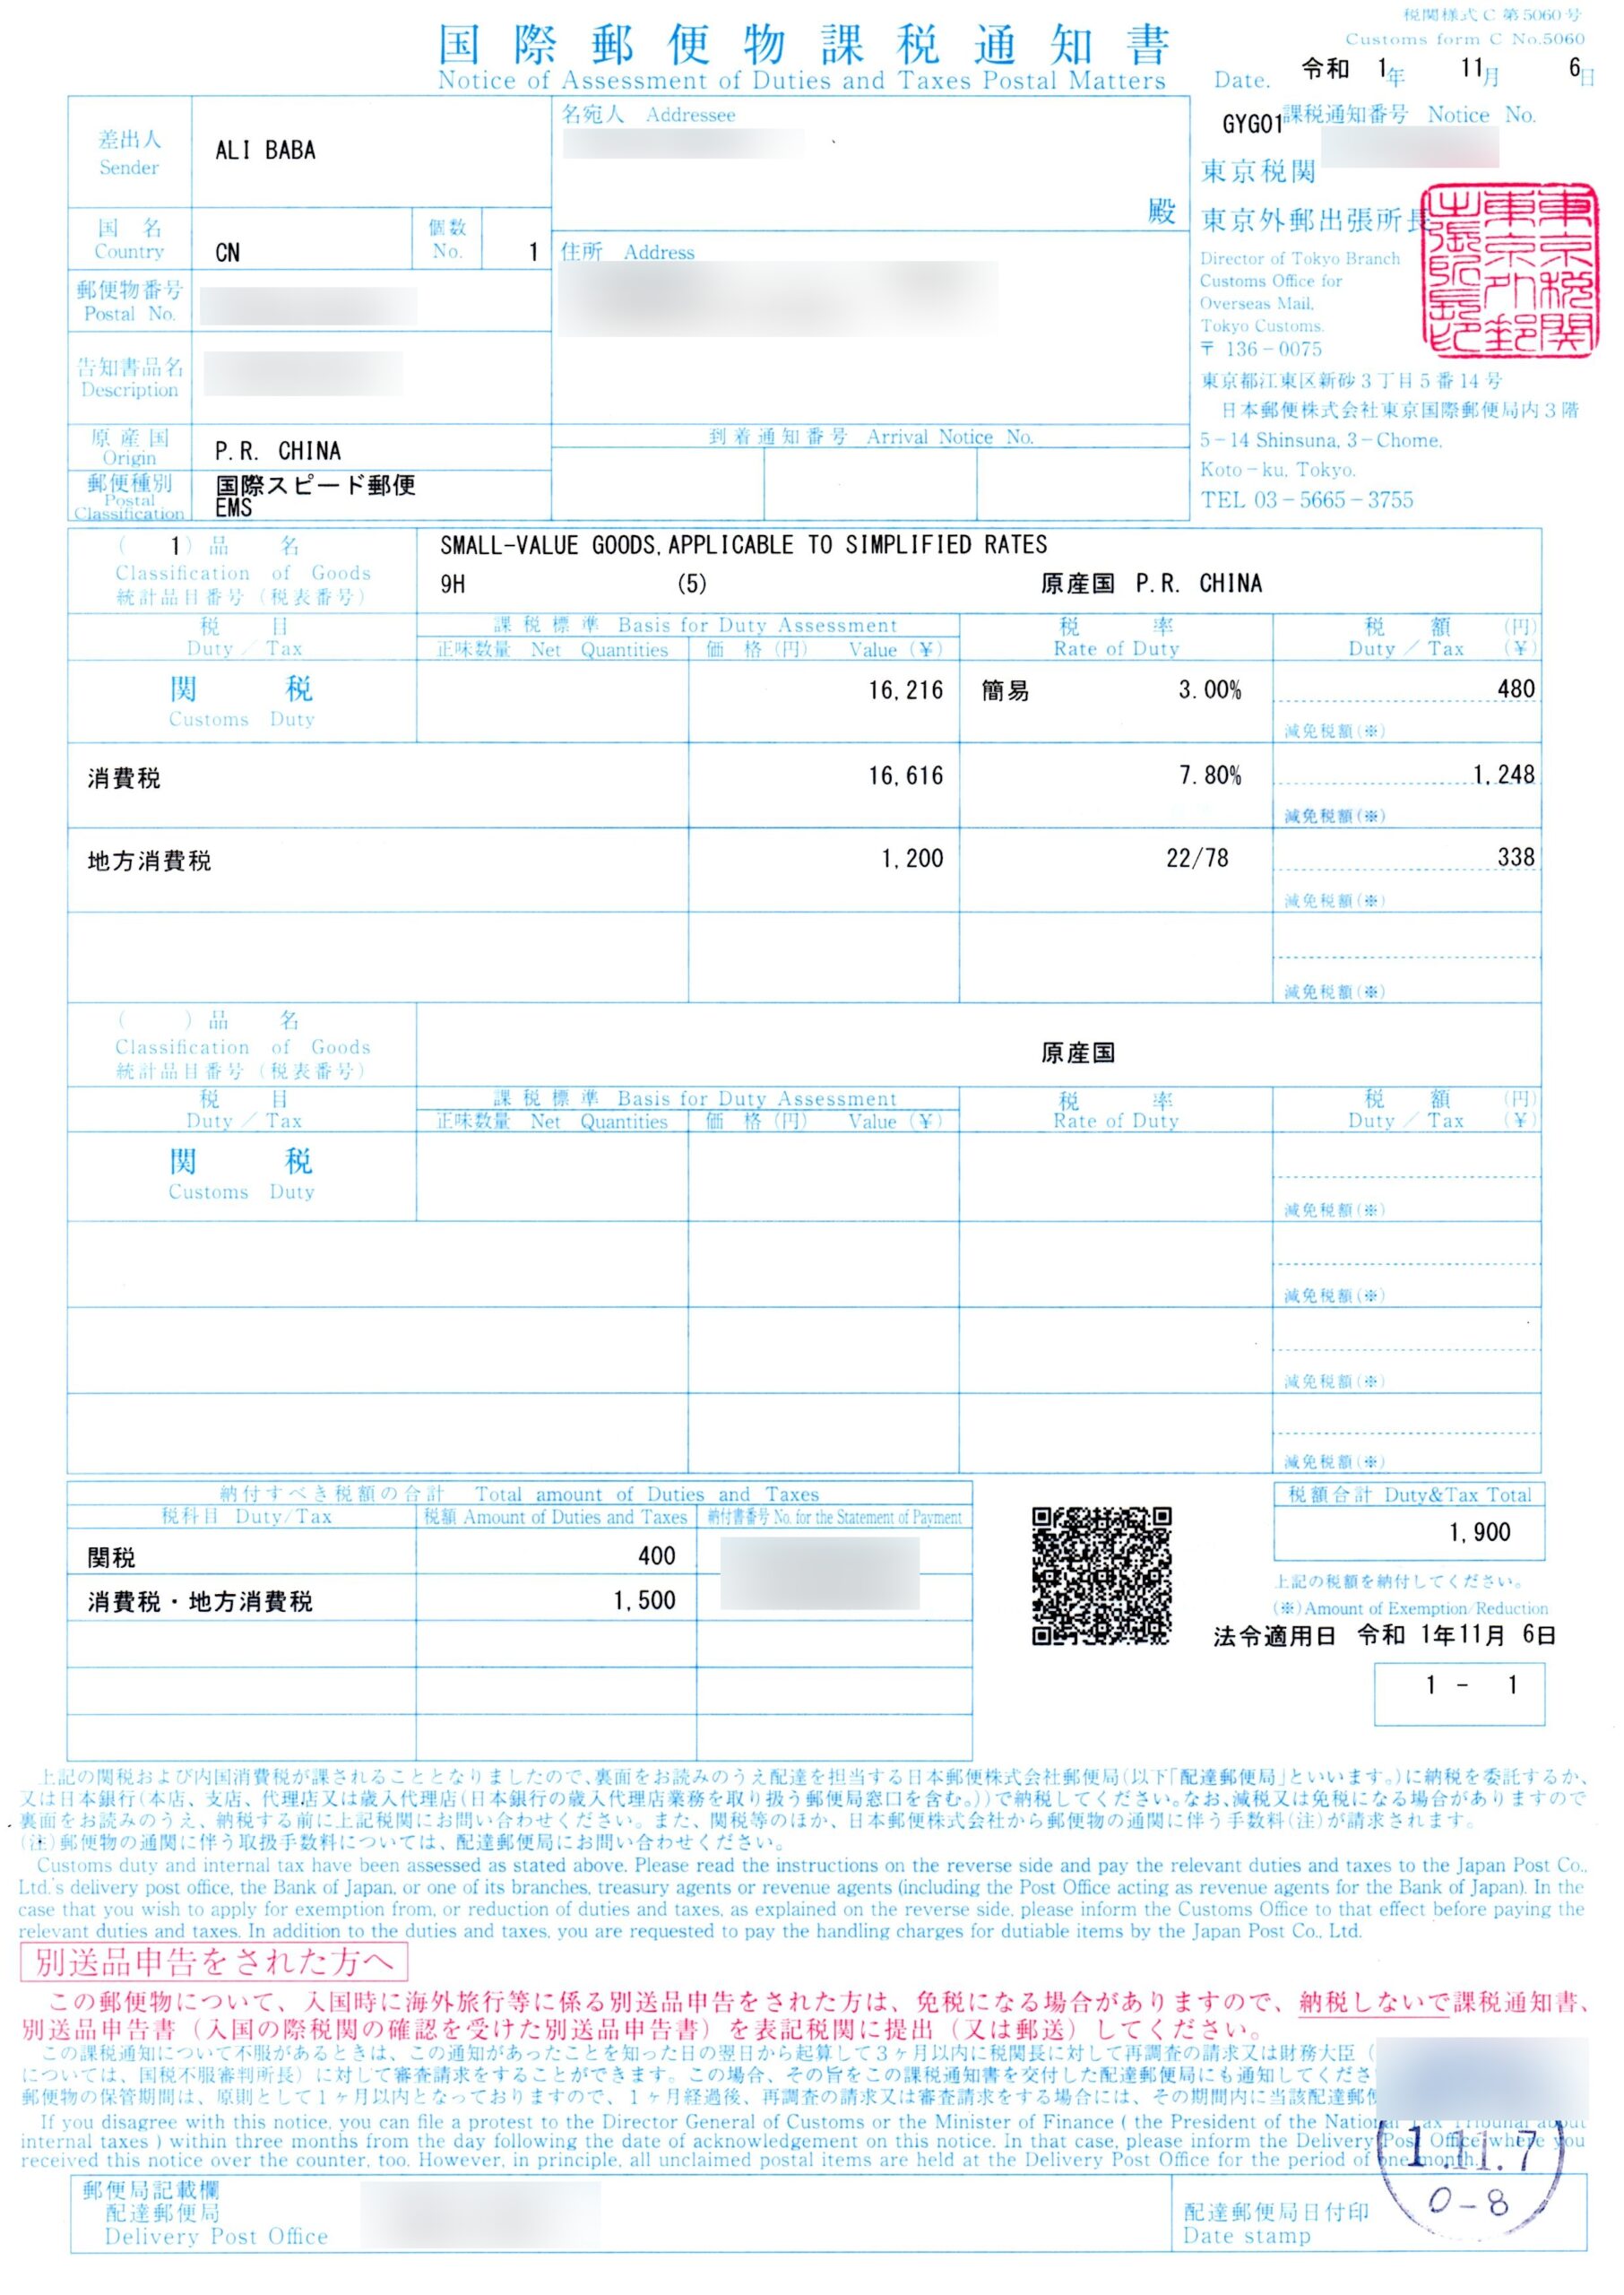 国際郵便物課税通知書